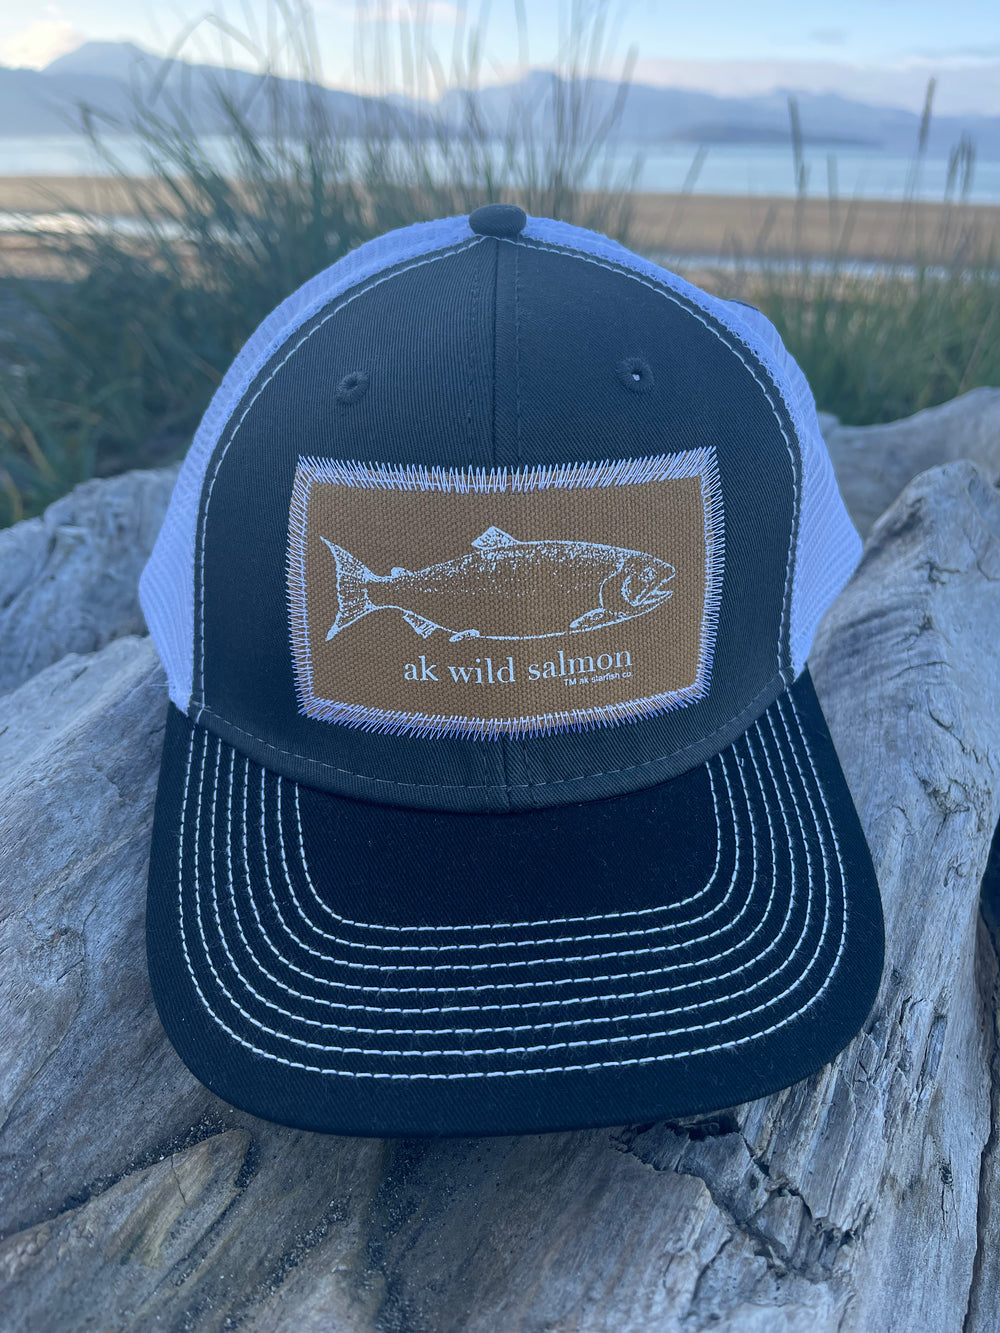 Slate / Black / White AK Wild Salmon Patch Hat. $38.00